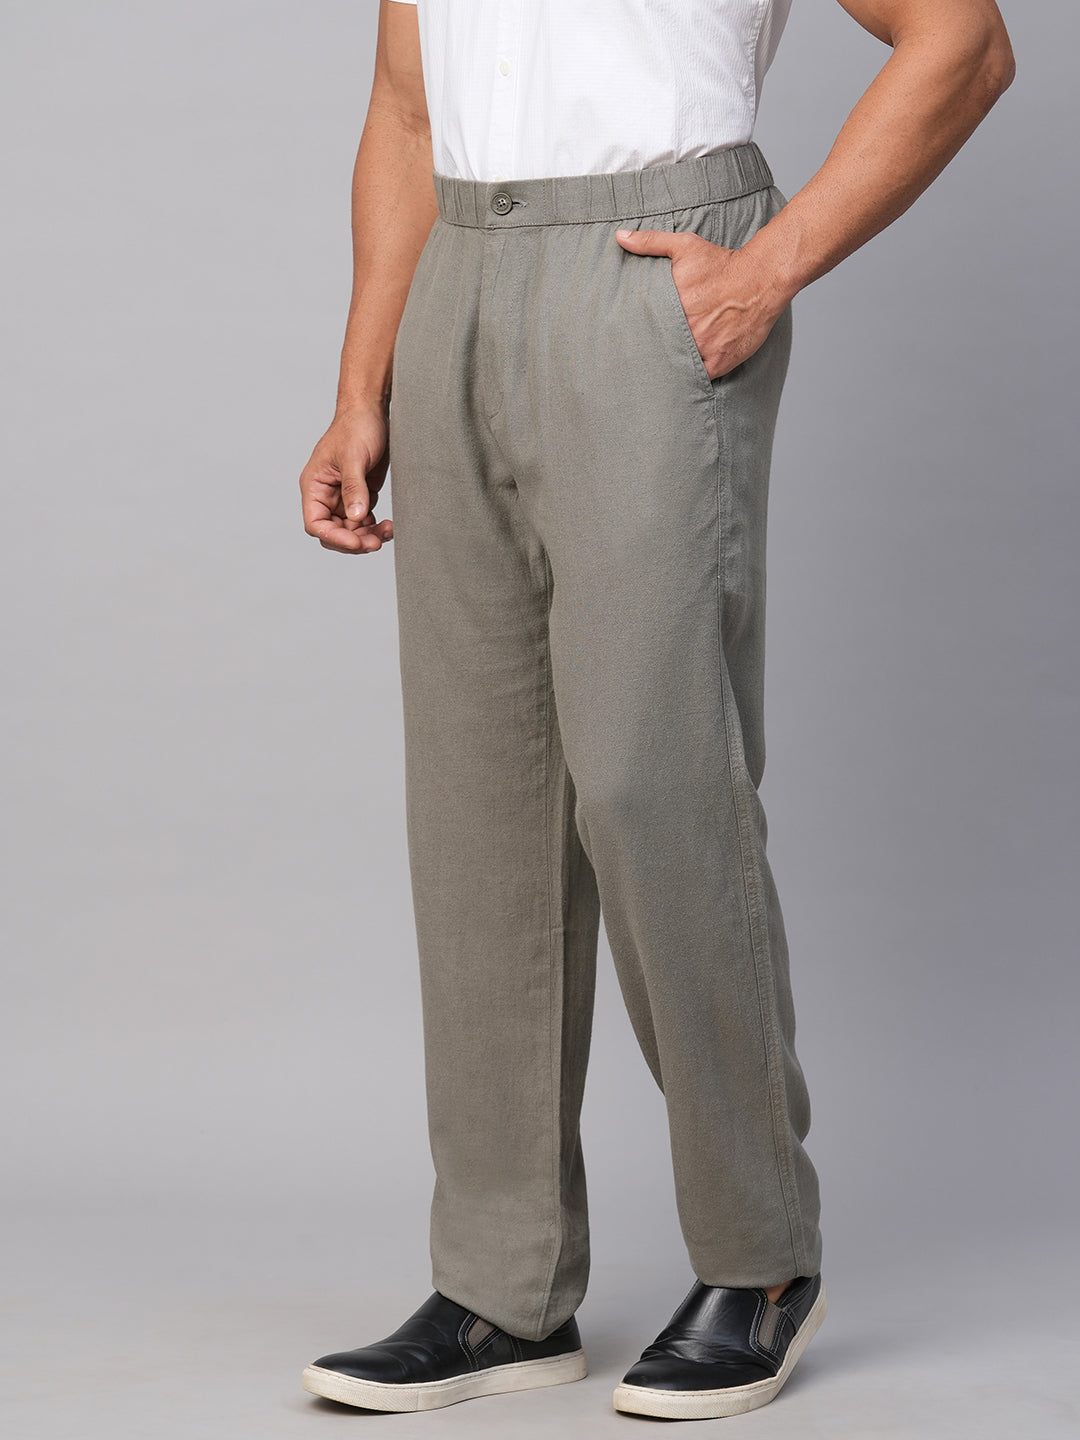 L?agama? Pure Linen Trousers - Men's Pants | Nencini Sport